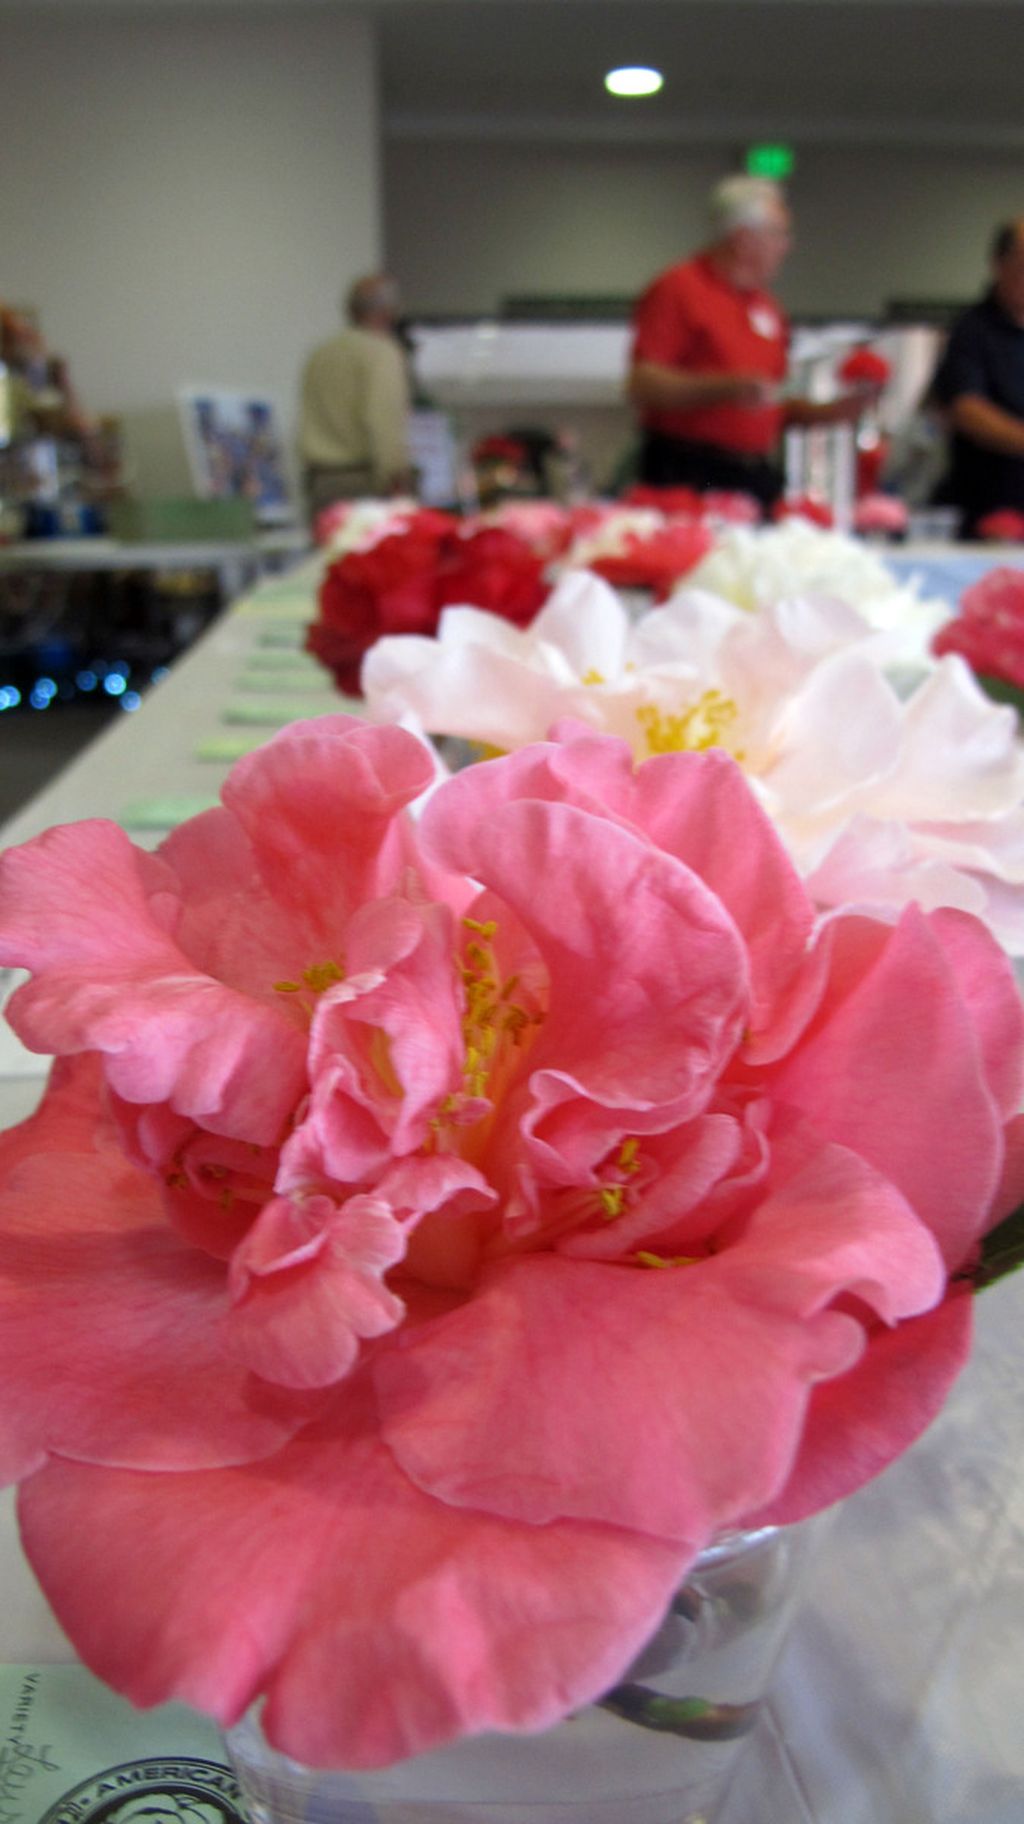 Ratusan bunga kamelia dipajang di Pensacola, Florida, Amerika Serikat saat pertemuan tahunan American Camellia Society.